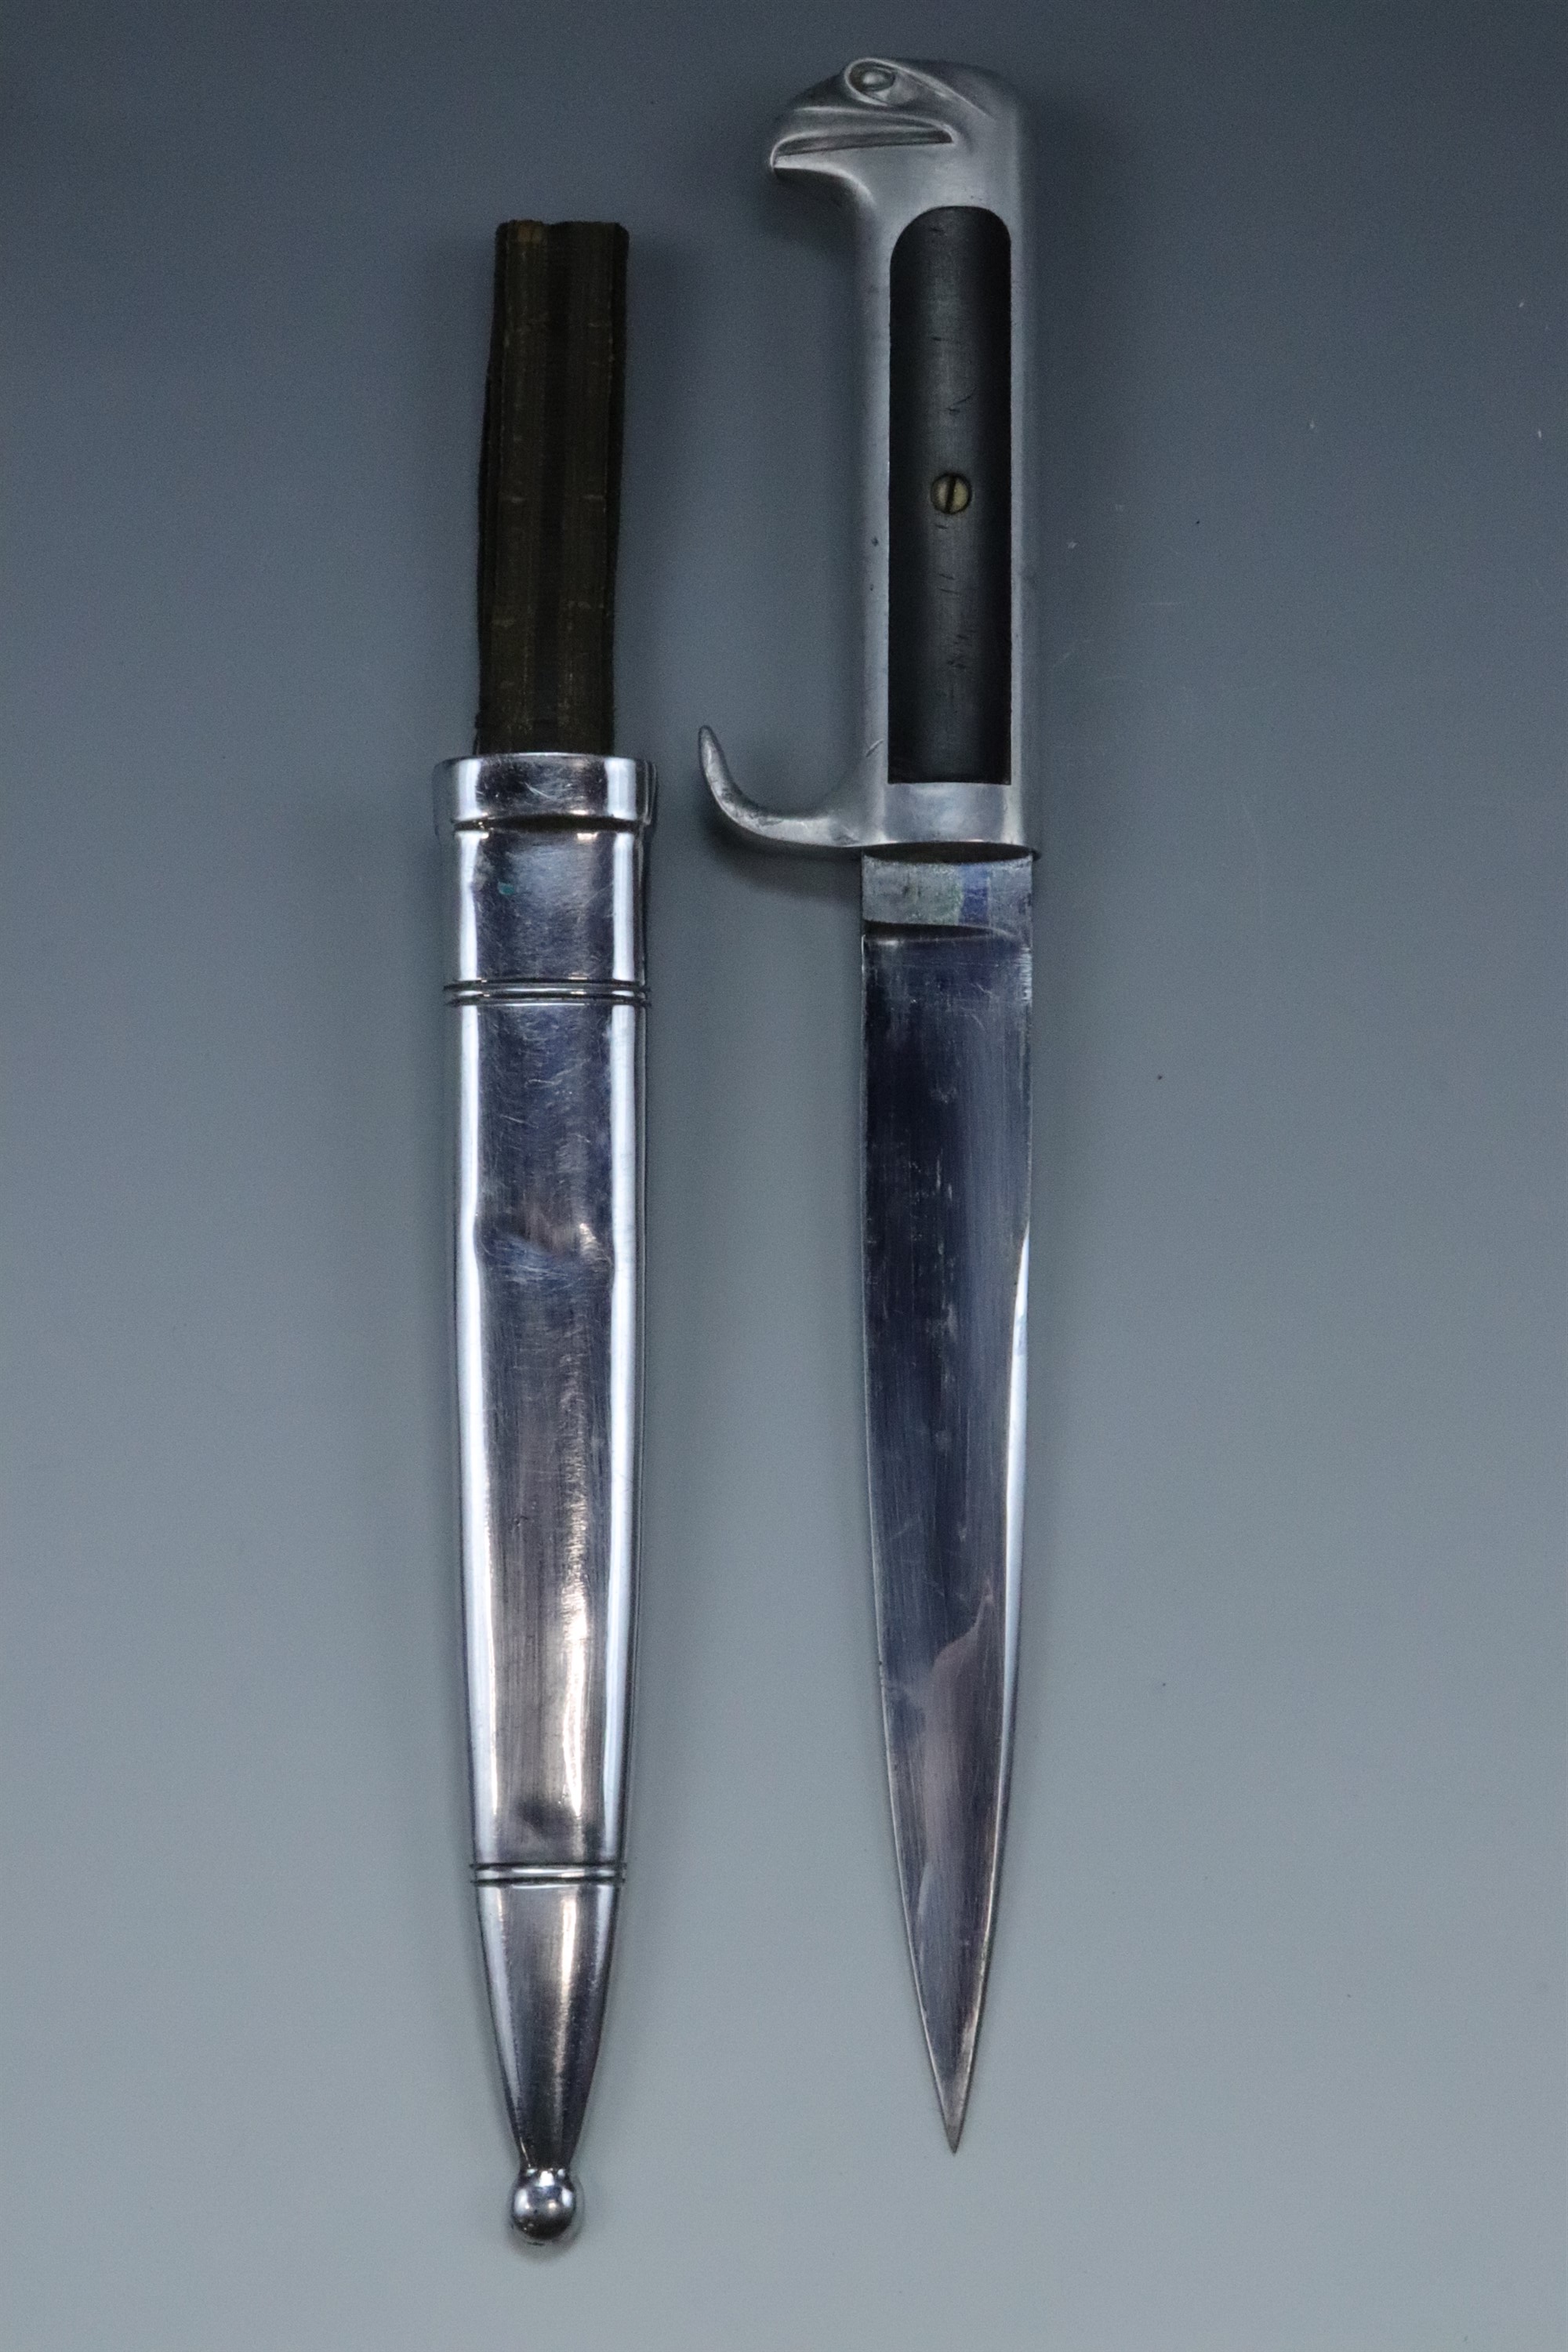 An Italian MVSN officer's dagger, 1930s - 1940s - Image 2 of 3